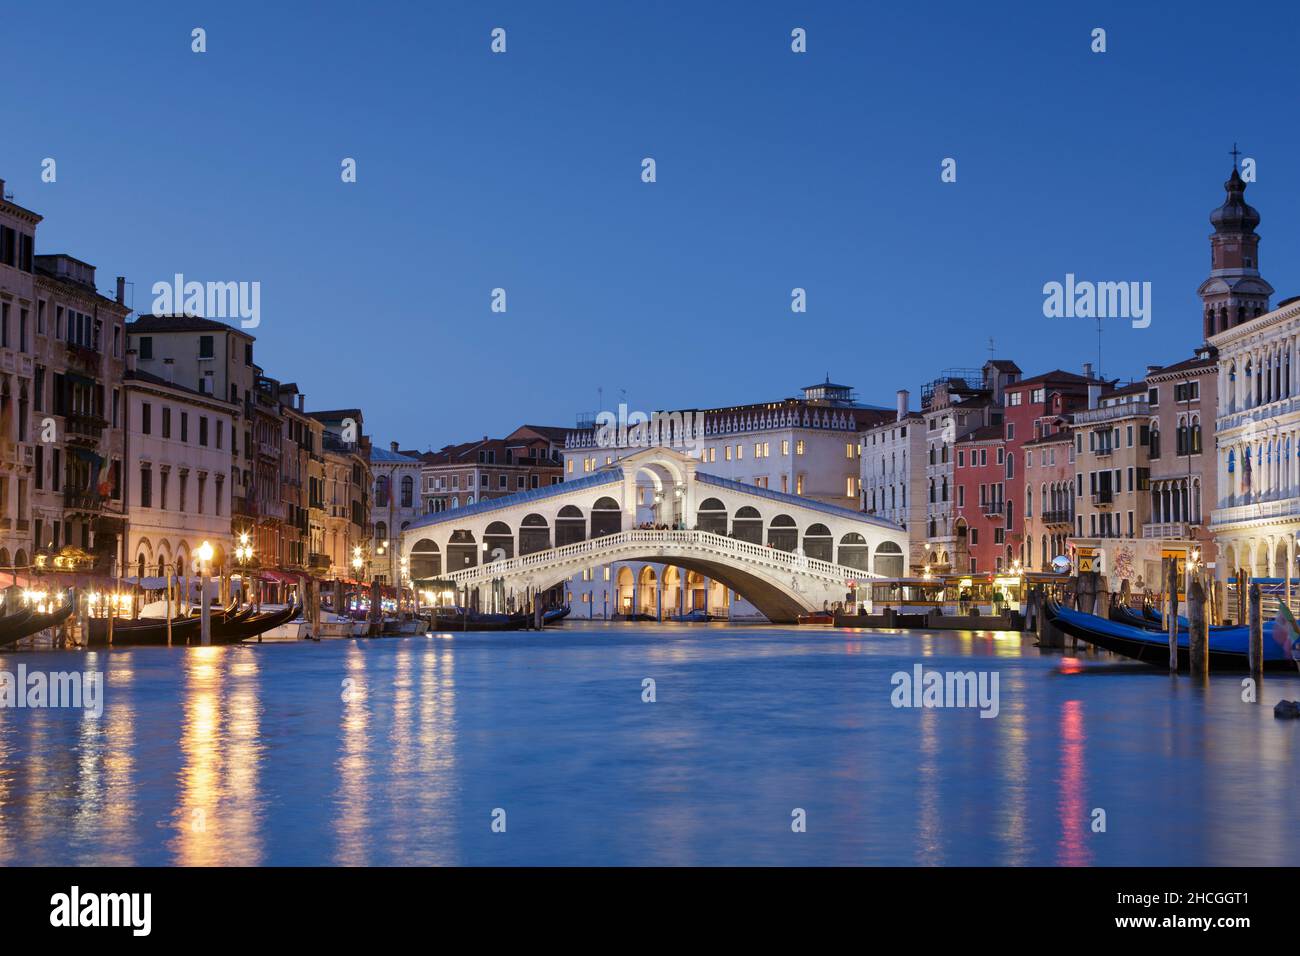 Rialto bridge at dusk, Venice, Italy Stock Photo